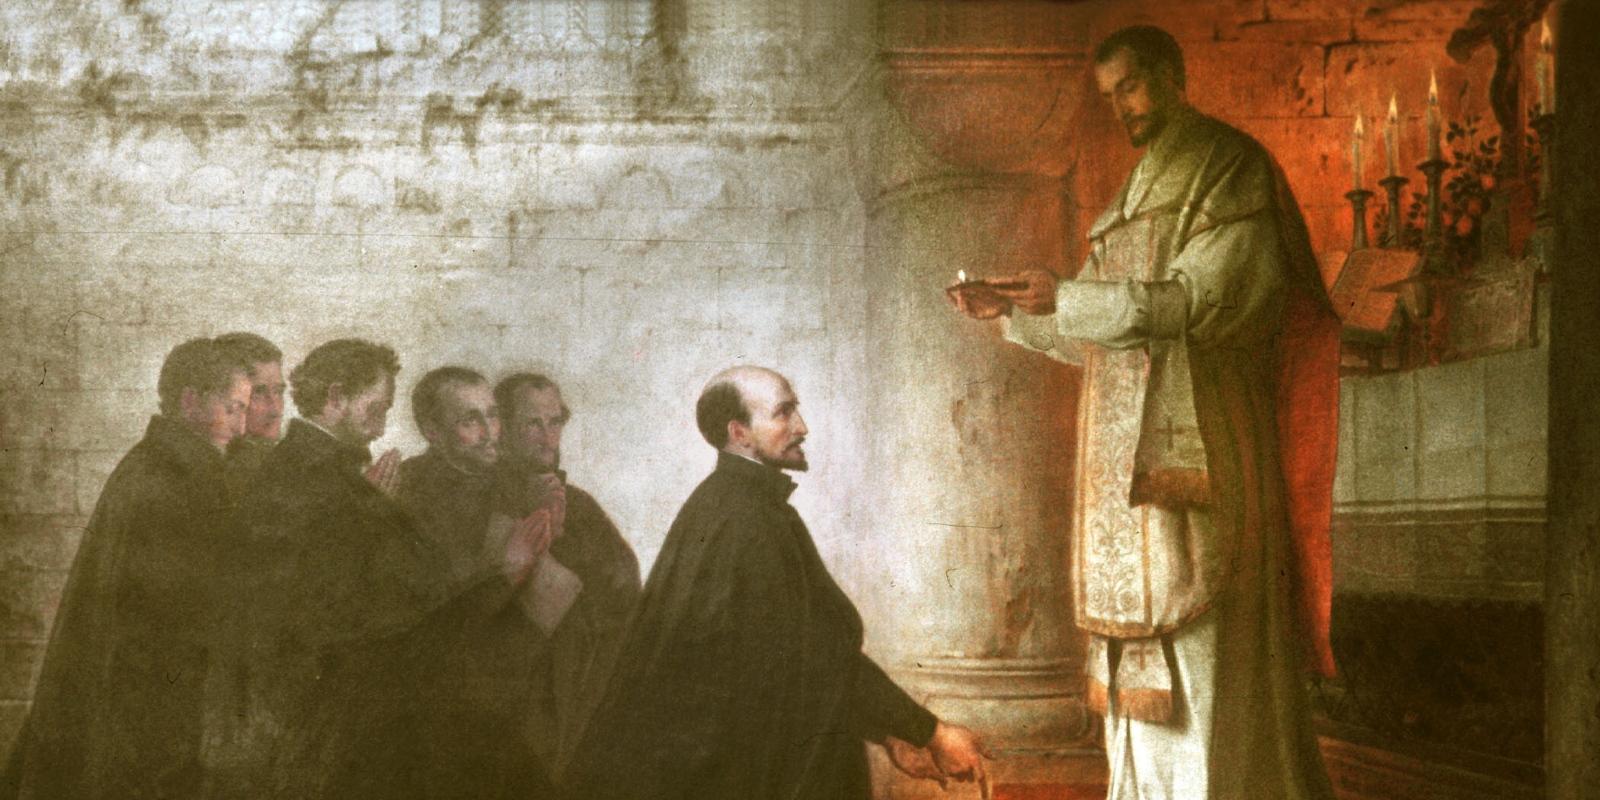 Fest- und Gedenktage Juli 1998..31. Juli Ignatius von Loyola..Bild: Gelübdefeier im Montmartre (Paris), 1534 / Gemälde von Konrad Baumeister (1881)